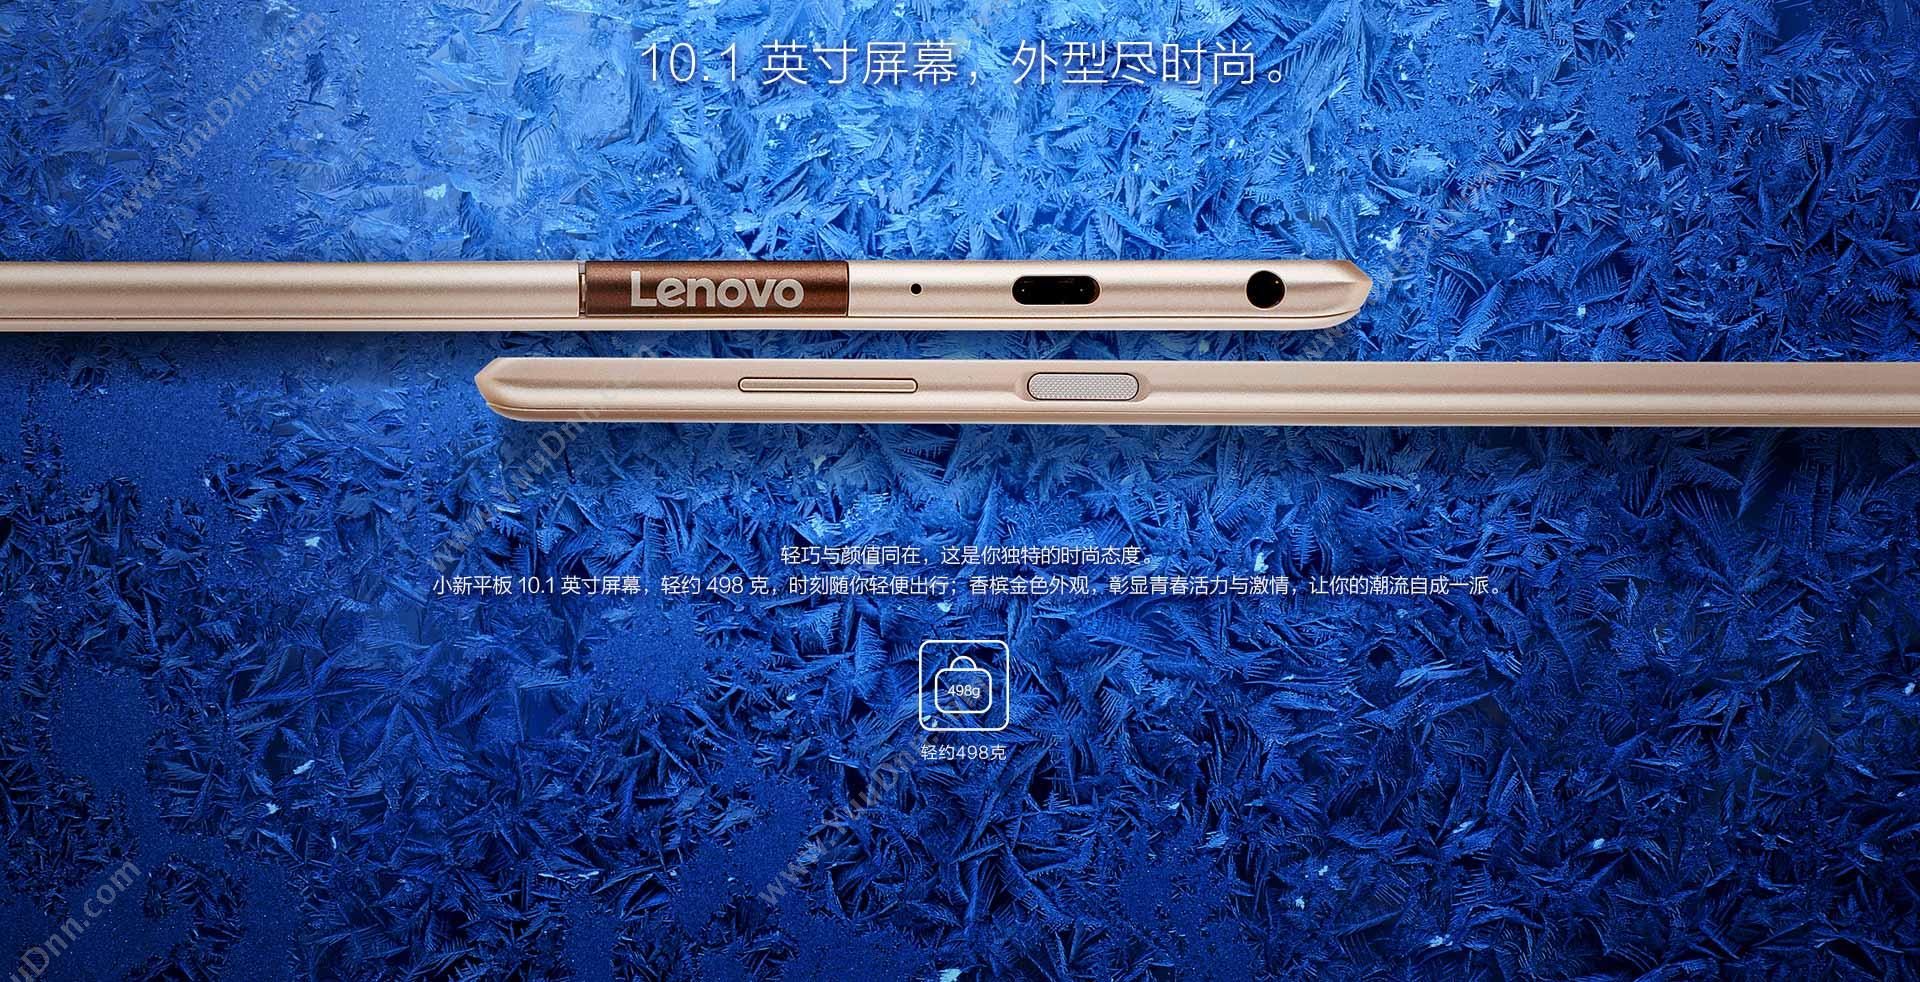 联想 Lenovo TB-X804F 小新平板  4G+64G wifi 香槟(金）  10英寸 八核骁龙625 分辨率1920*1200 摄像头前500万后800万 指纹识别 平板电脑